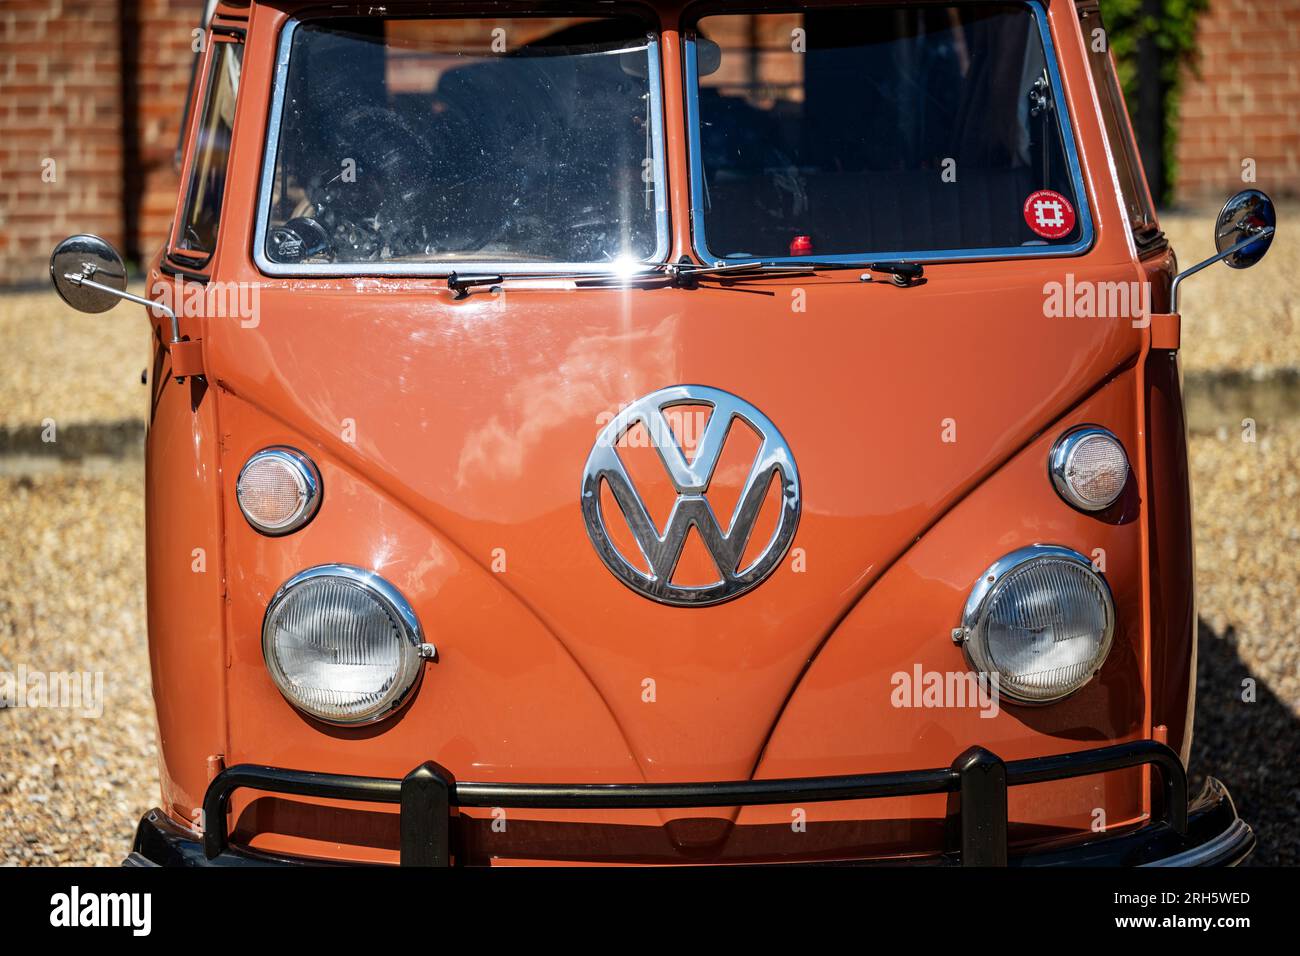 Vintage Volkswagen bus Stock Photo